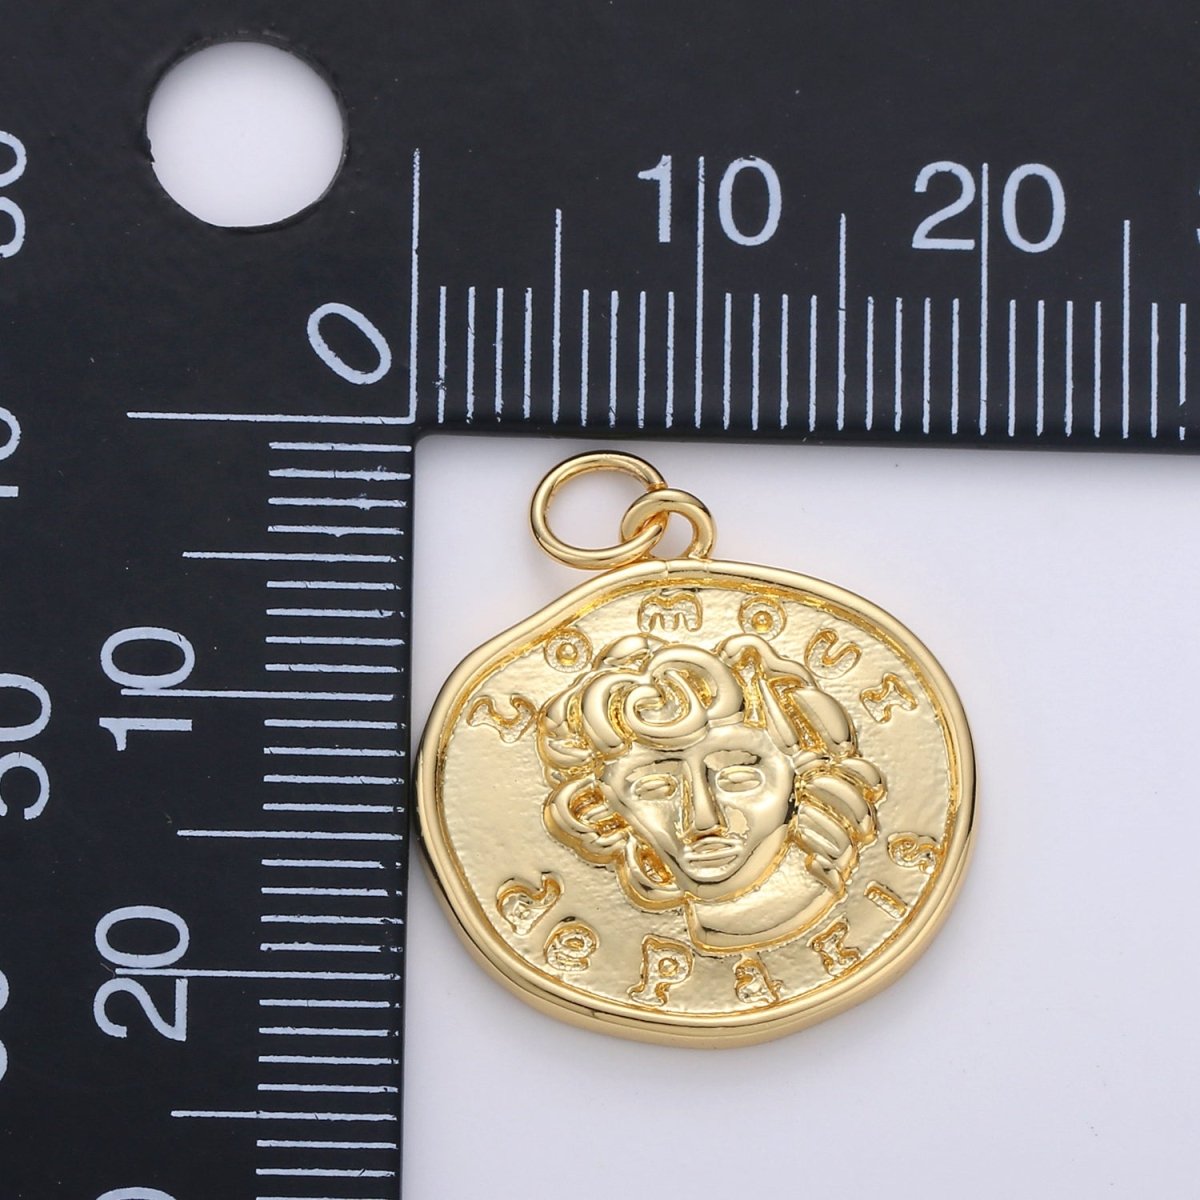 Lomoui de Paris Gold Rustic Coin Gold Filled Charm - D-514 - DLUXCA